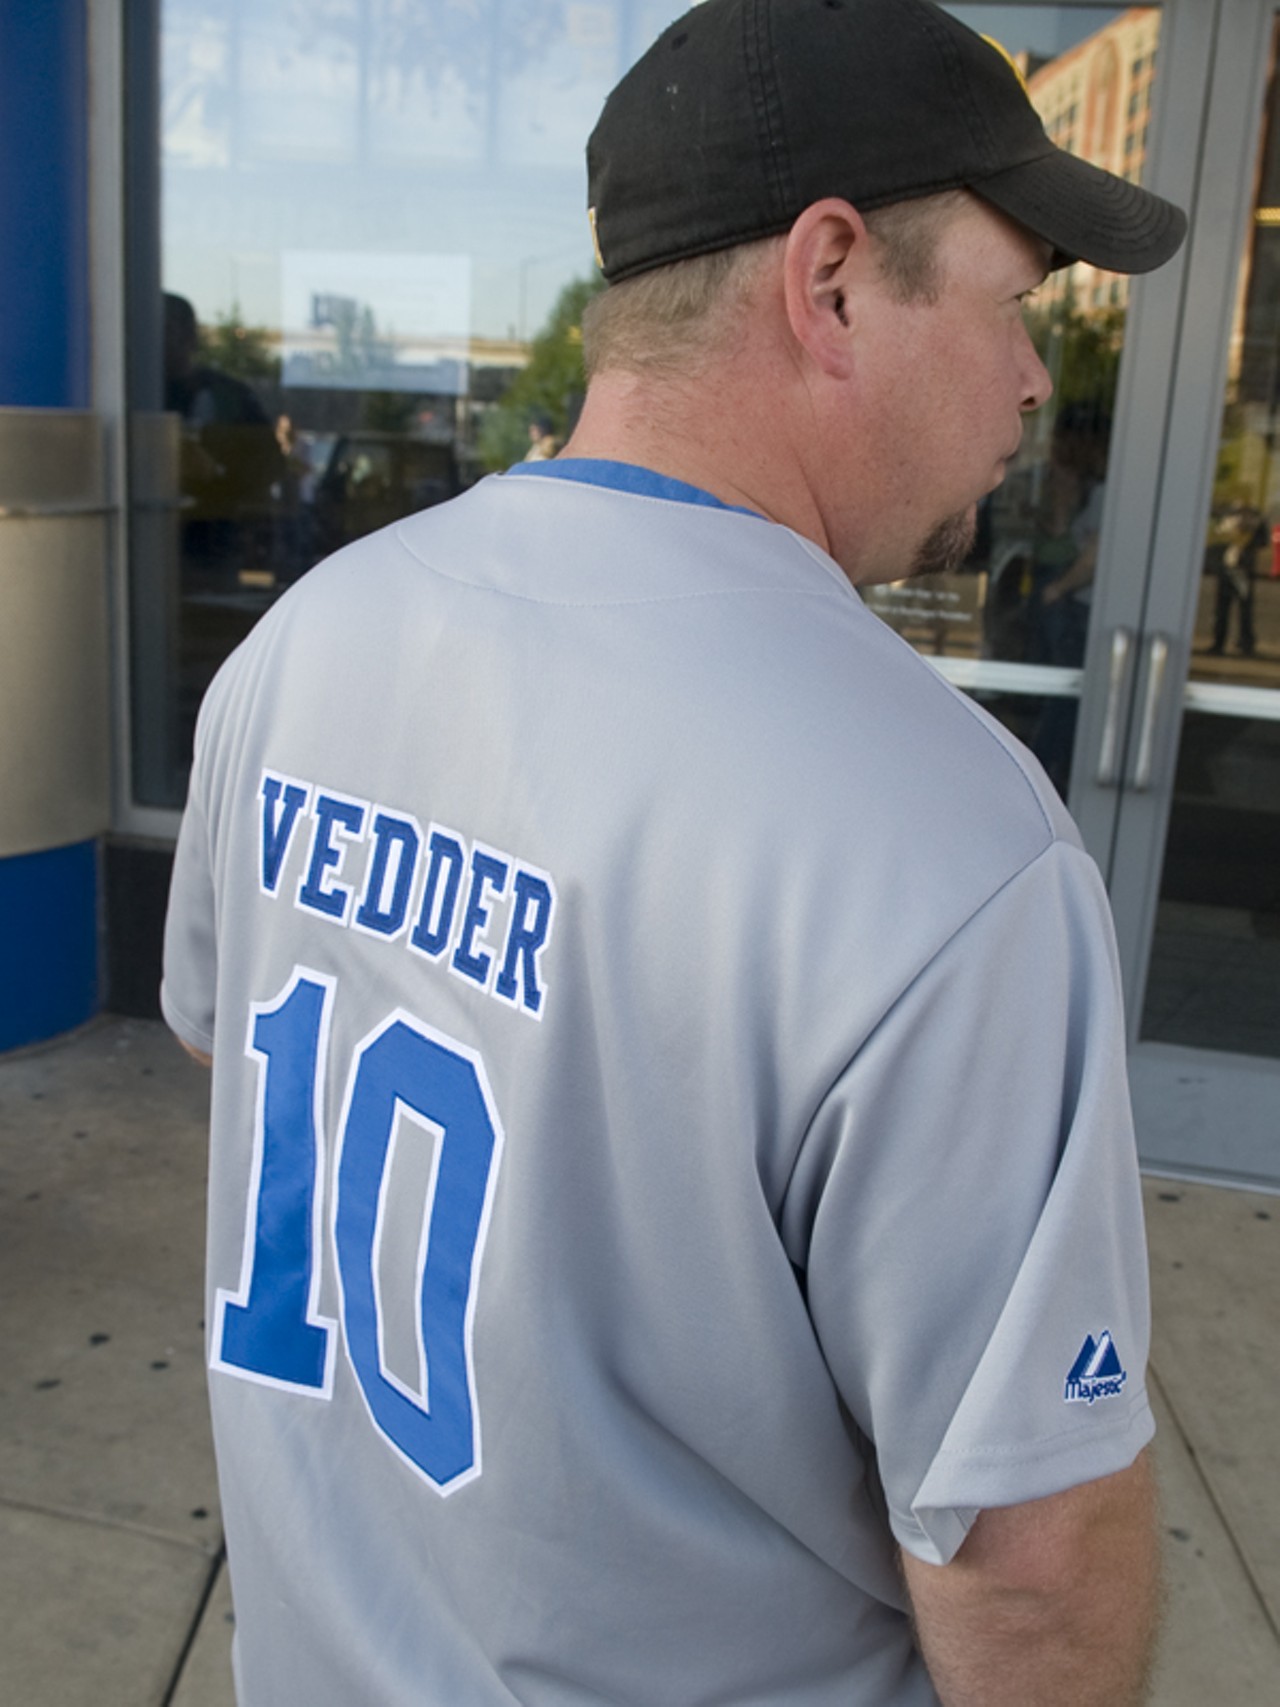 An Eddie Vedder Cubs jersey. What a novel idea!